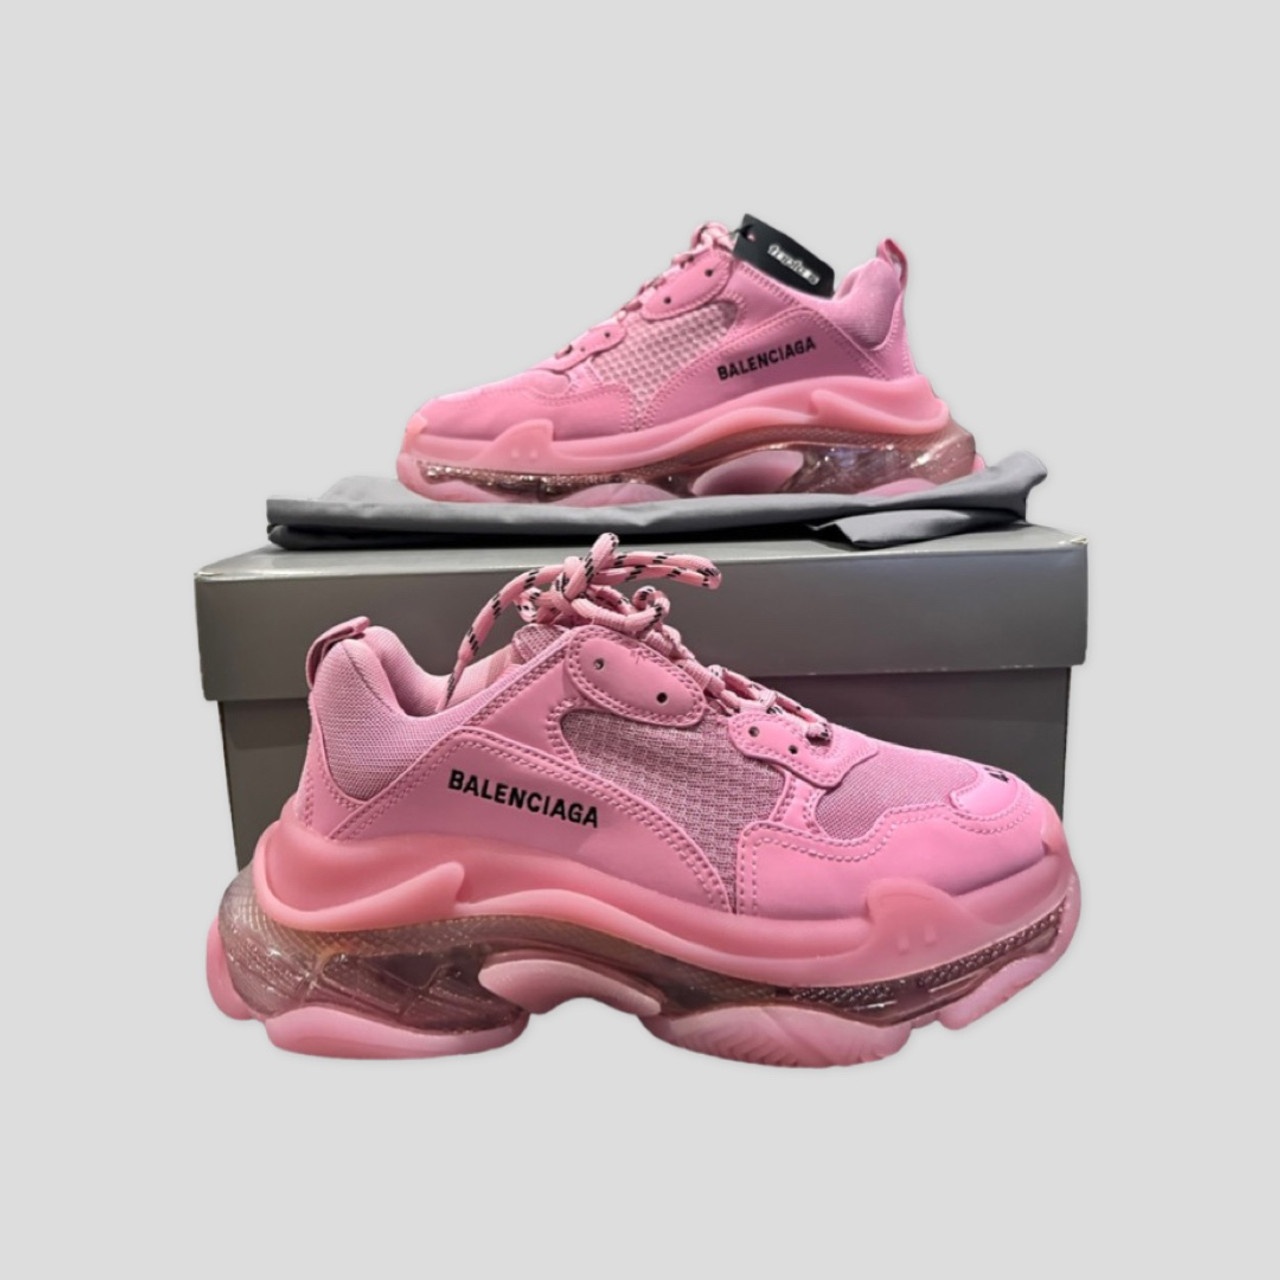 Balenciaga Women's Triple S Clear Sole Sneaker - Pink - Size 5